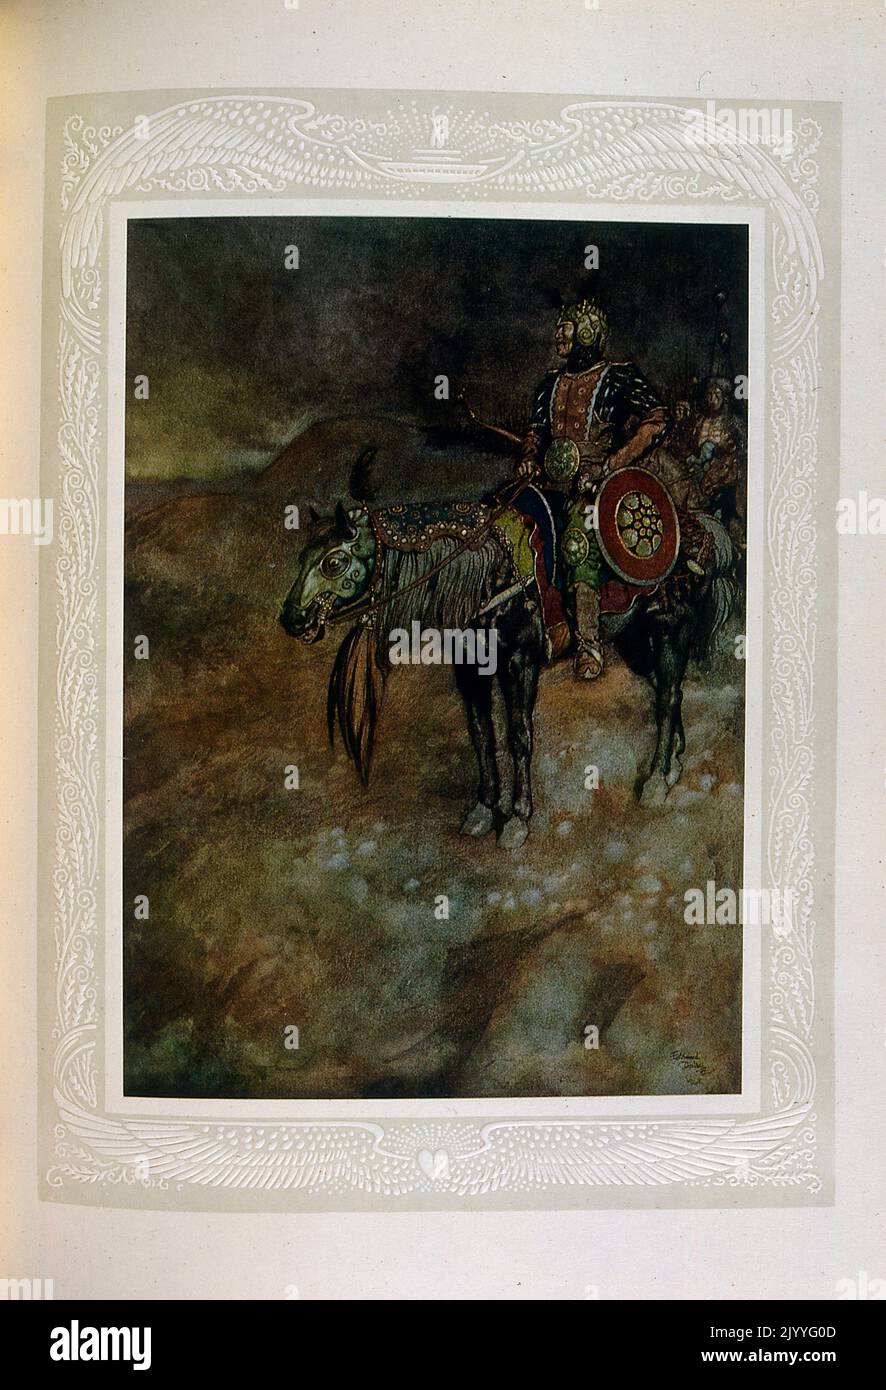 Illustrazione colorata di un guerriero a cavallo. Illustrato da Edmund Dulac (1882-1953), una rivista naturalizzata francese britannica e illustratore di libri. Foto Stock